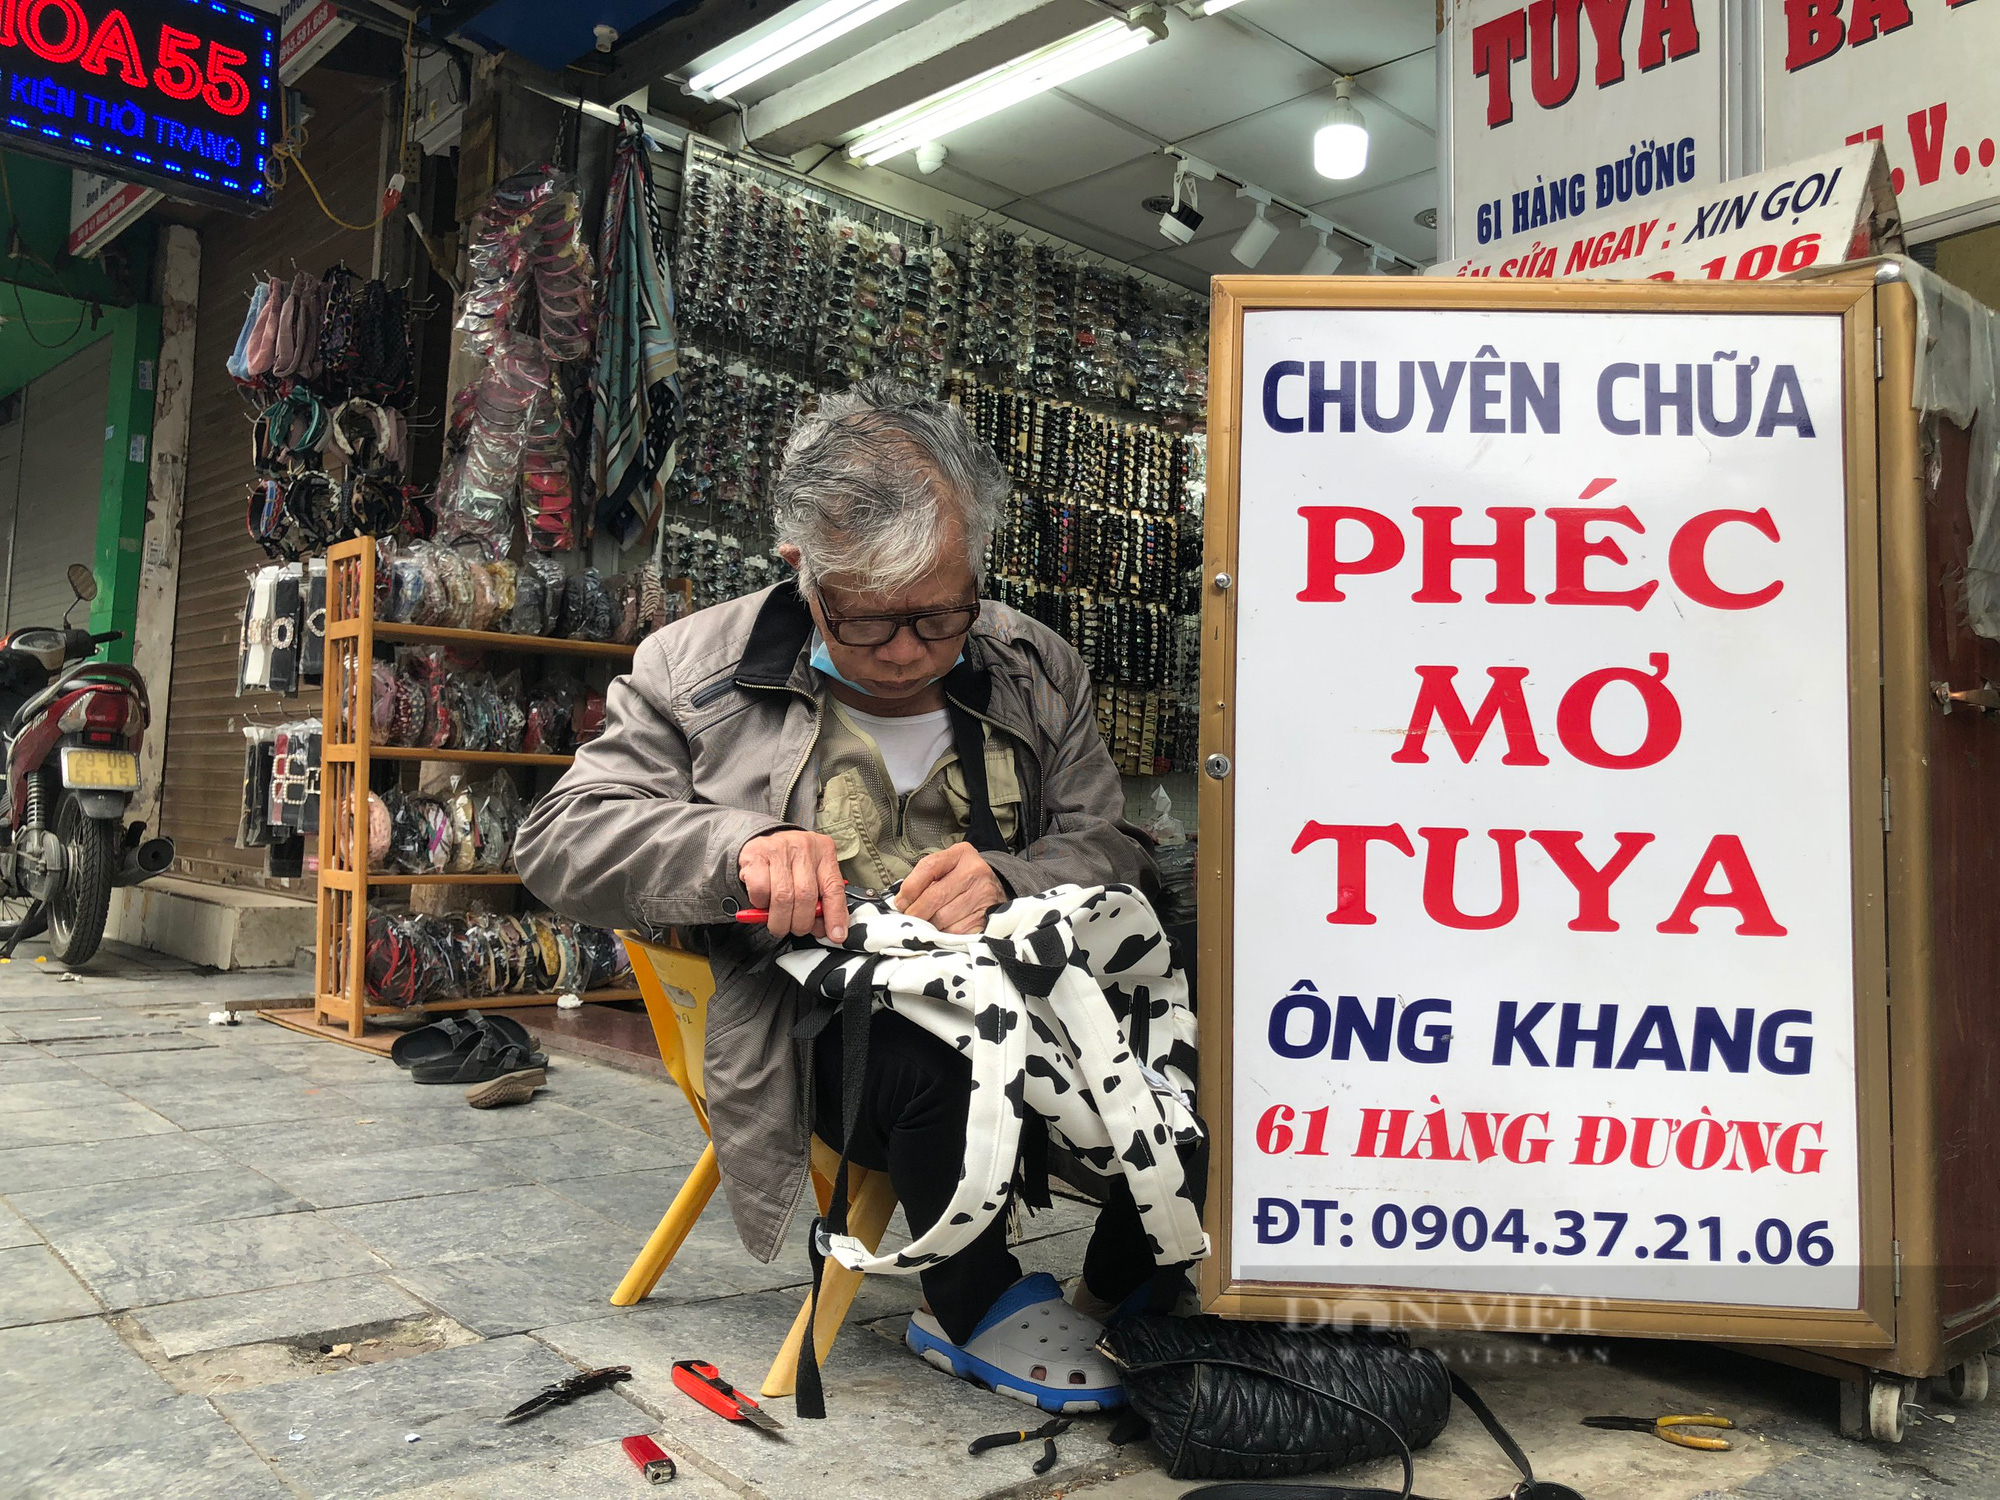 Nghề lạ ở Hà Nội: Ngồi vỉa hè phố cổ chỉ khâu, vá balo túi xách mà kiếm cả chỉ vàng mỗi tháng - Ảnh 1.